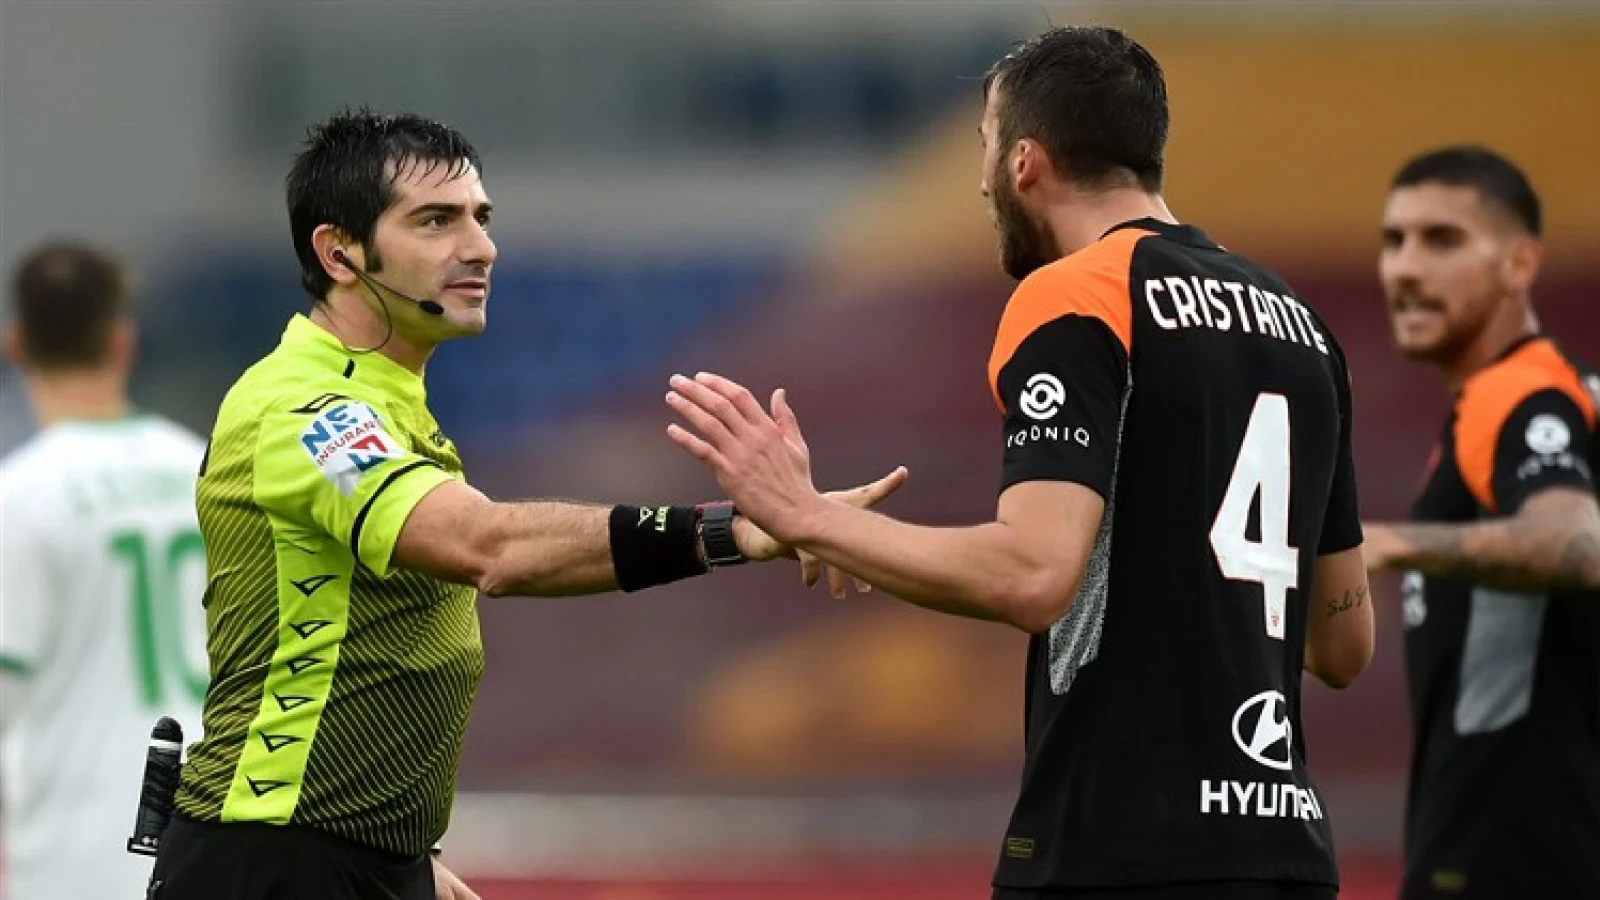 Italiaanse scheidsrechter bij wedstrijd tussen Maccabi Haifa en Feyenoord